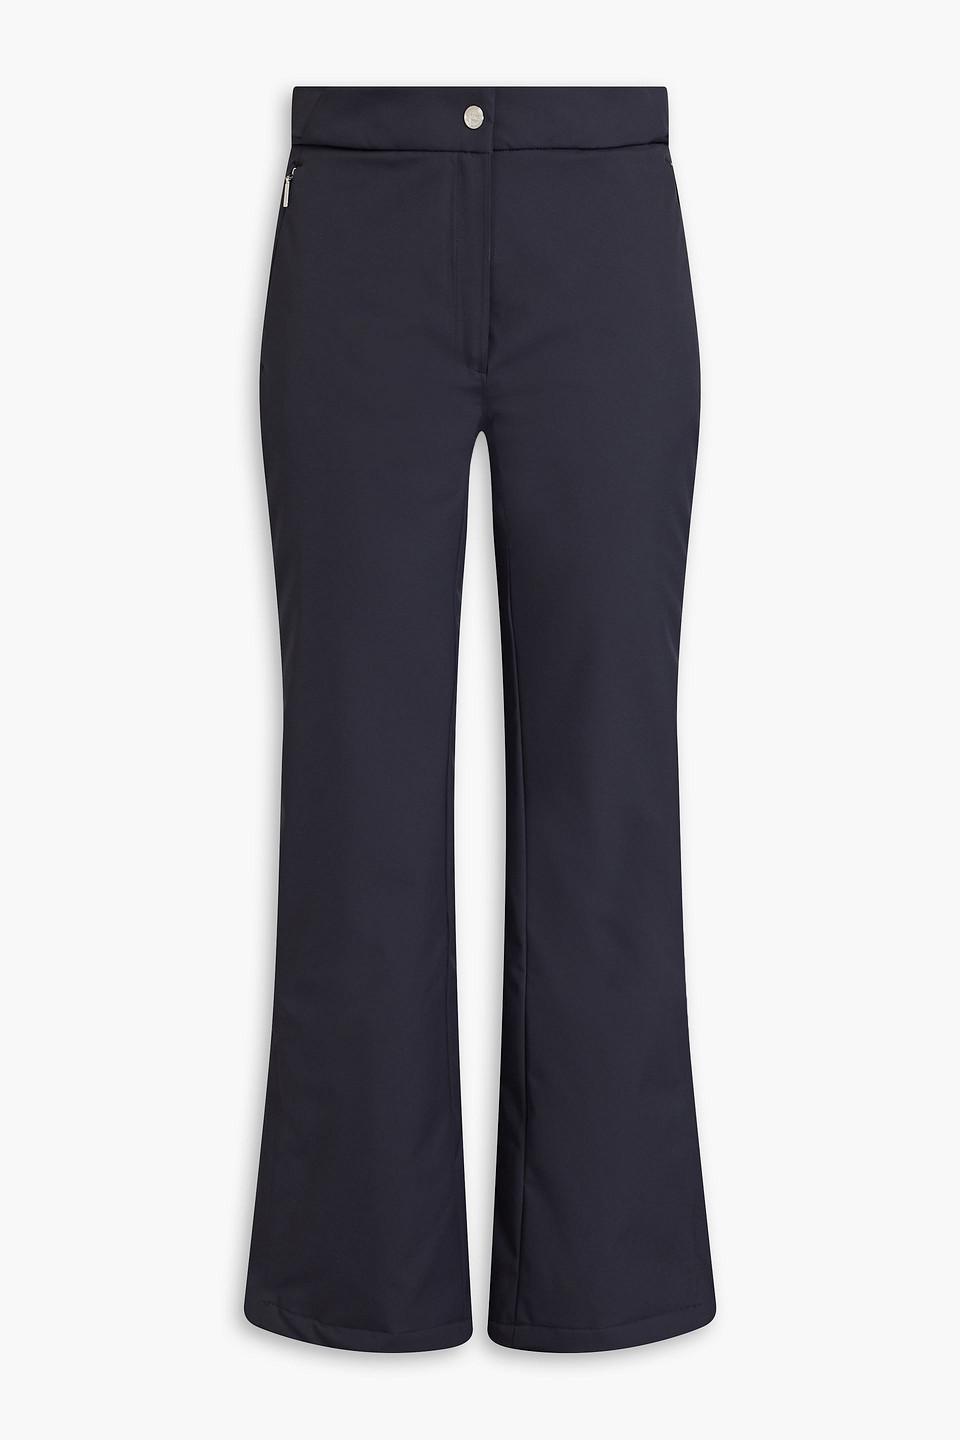 Tipi high-waist softshell fuseau ski pants